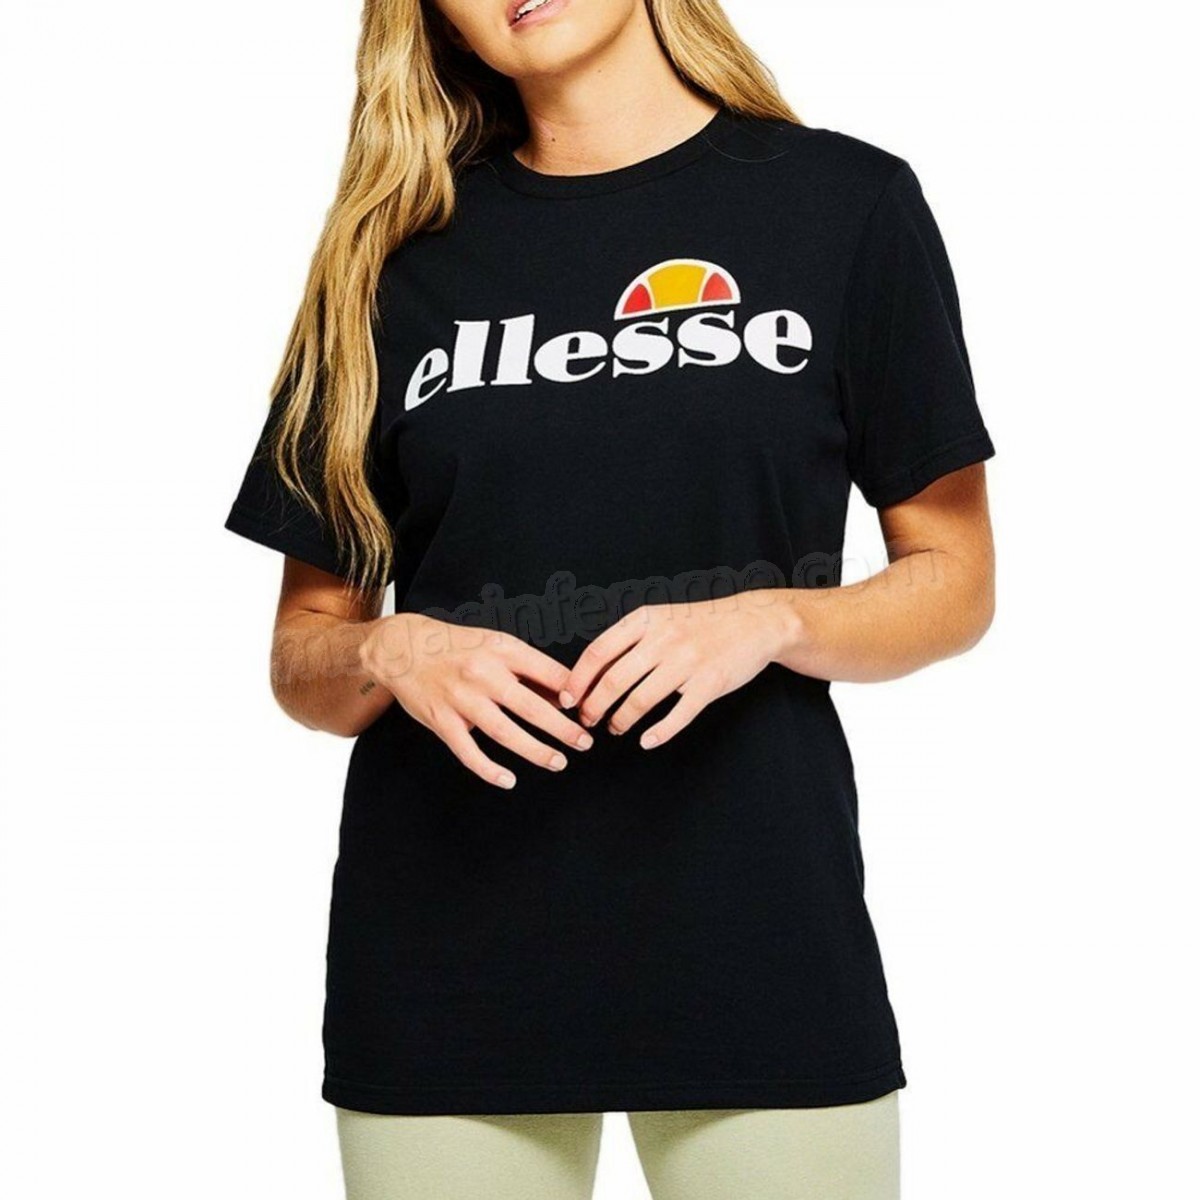 Ellesse-Athlétisme femme ELLESSE Ellesse Heritage Albany Tee-shirt Tee-shirt Mode Femme Pour Femmes - Noir - UK 12 en solde - -2